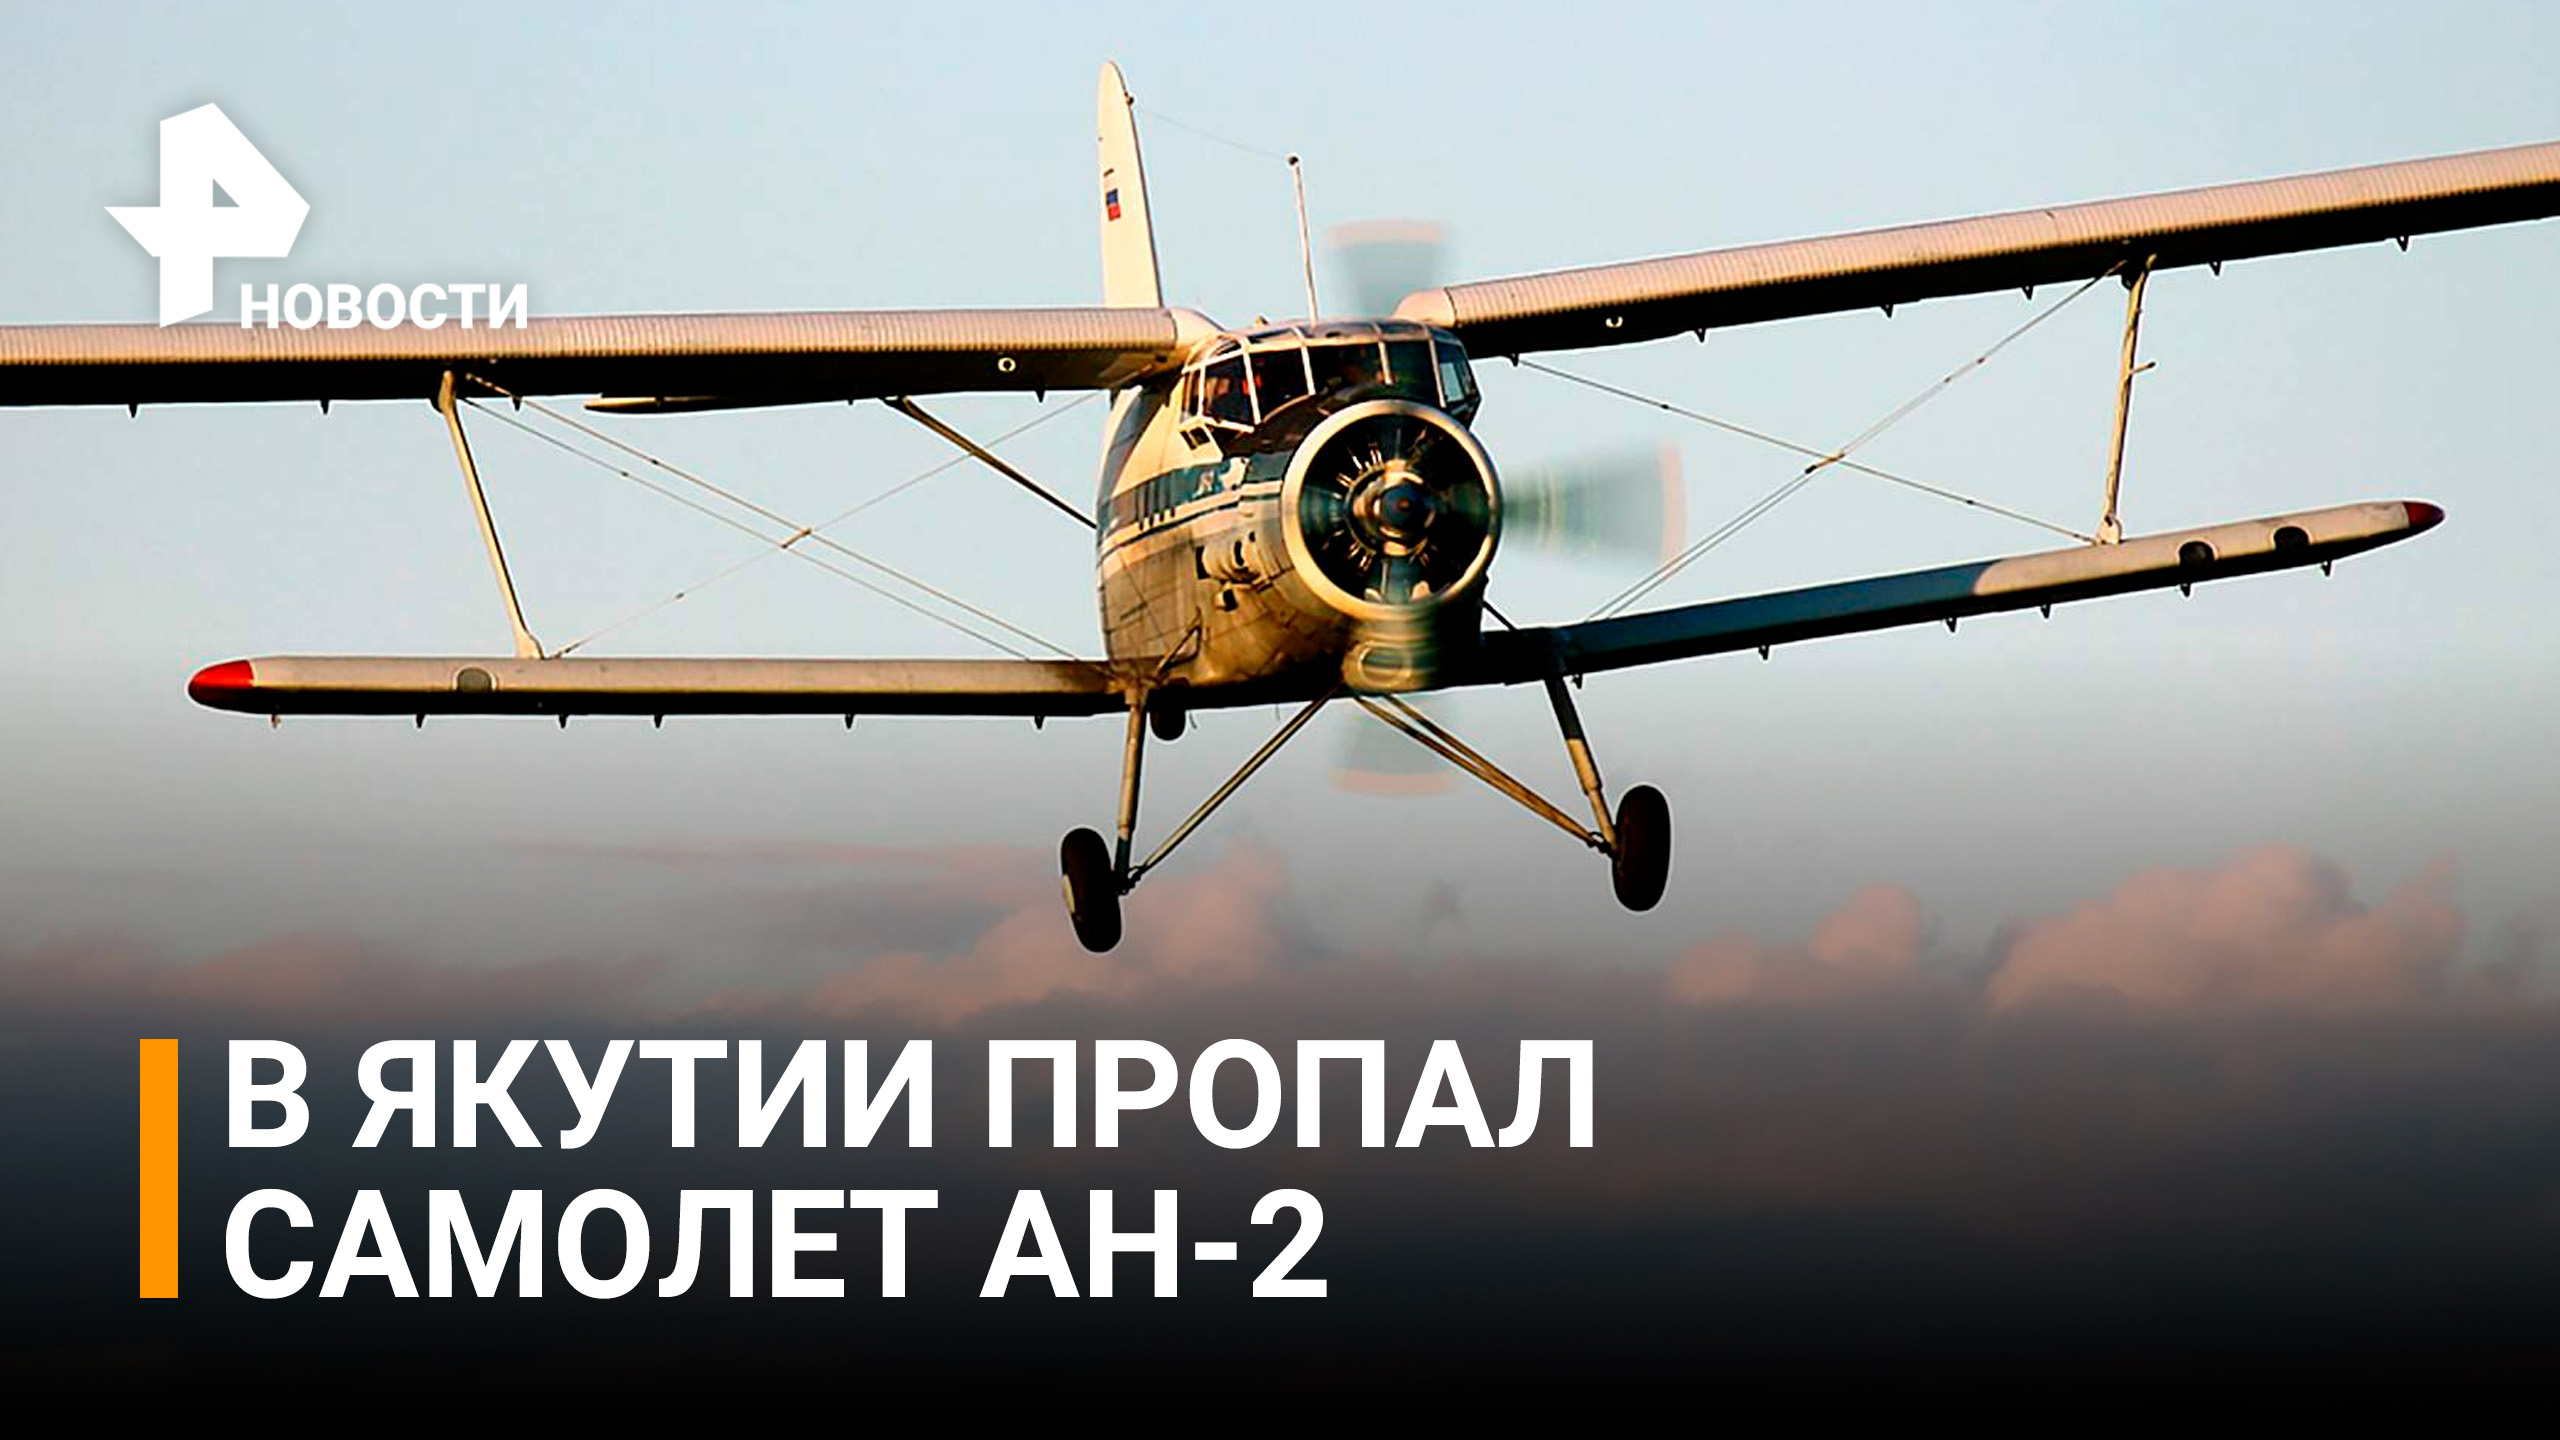 Аварийные маяки пропавшего в Якутии Ан-2 не сработали / РЕН Новости